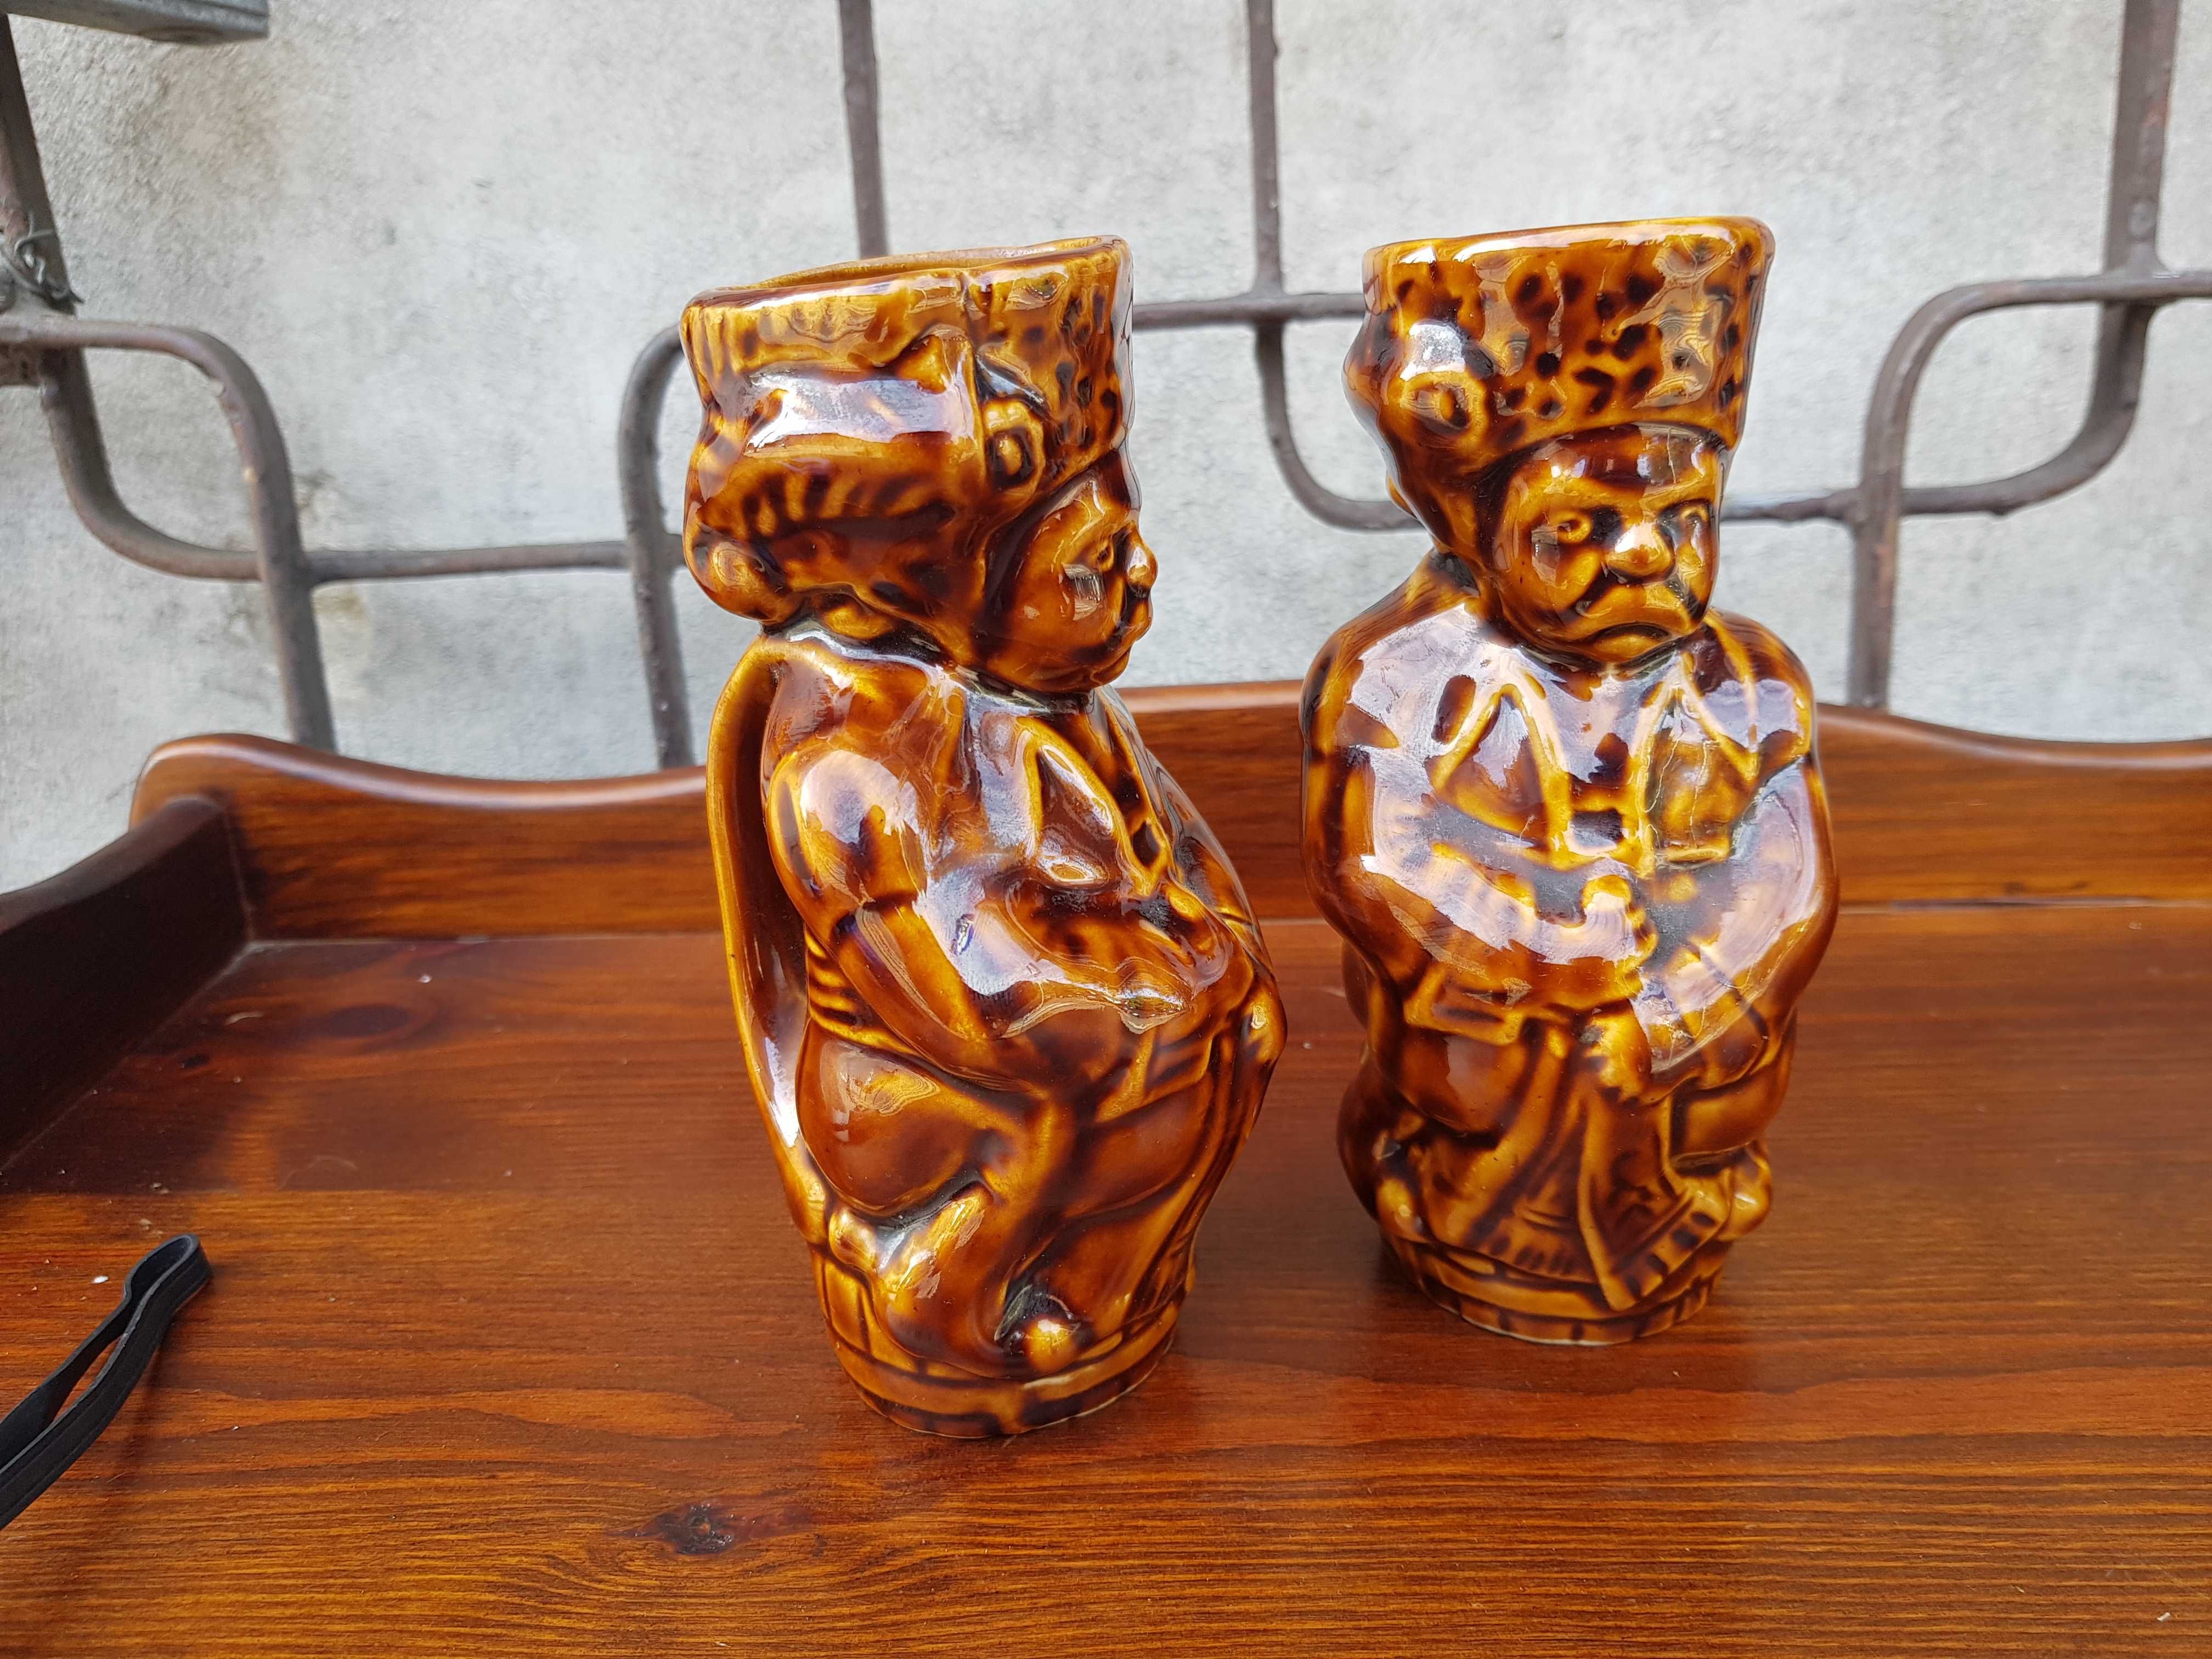 Stare ceramiczne wazony dzbanki komplet 2 sztuki